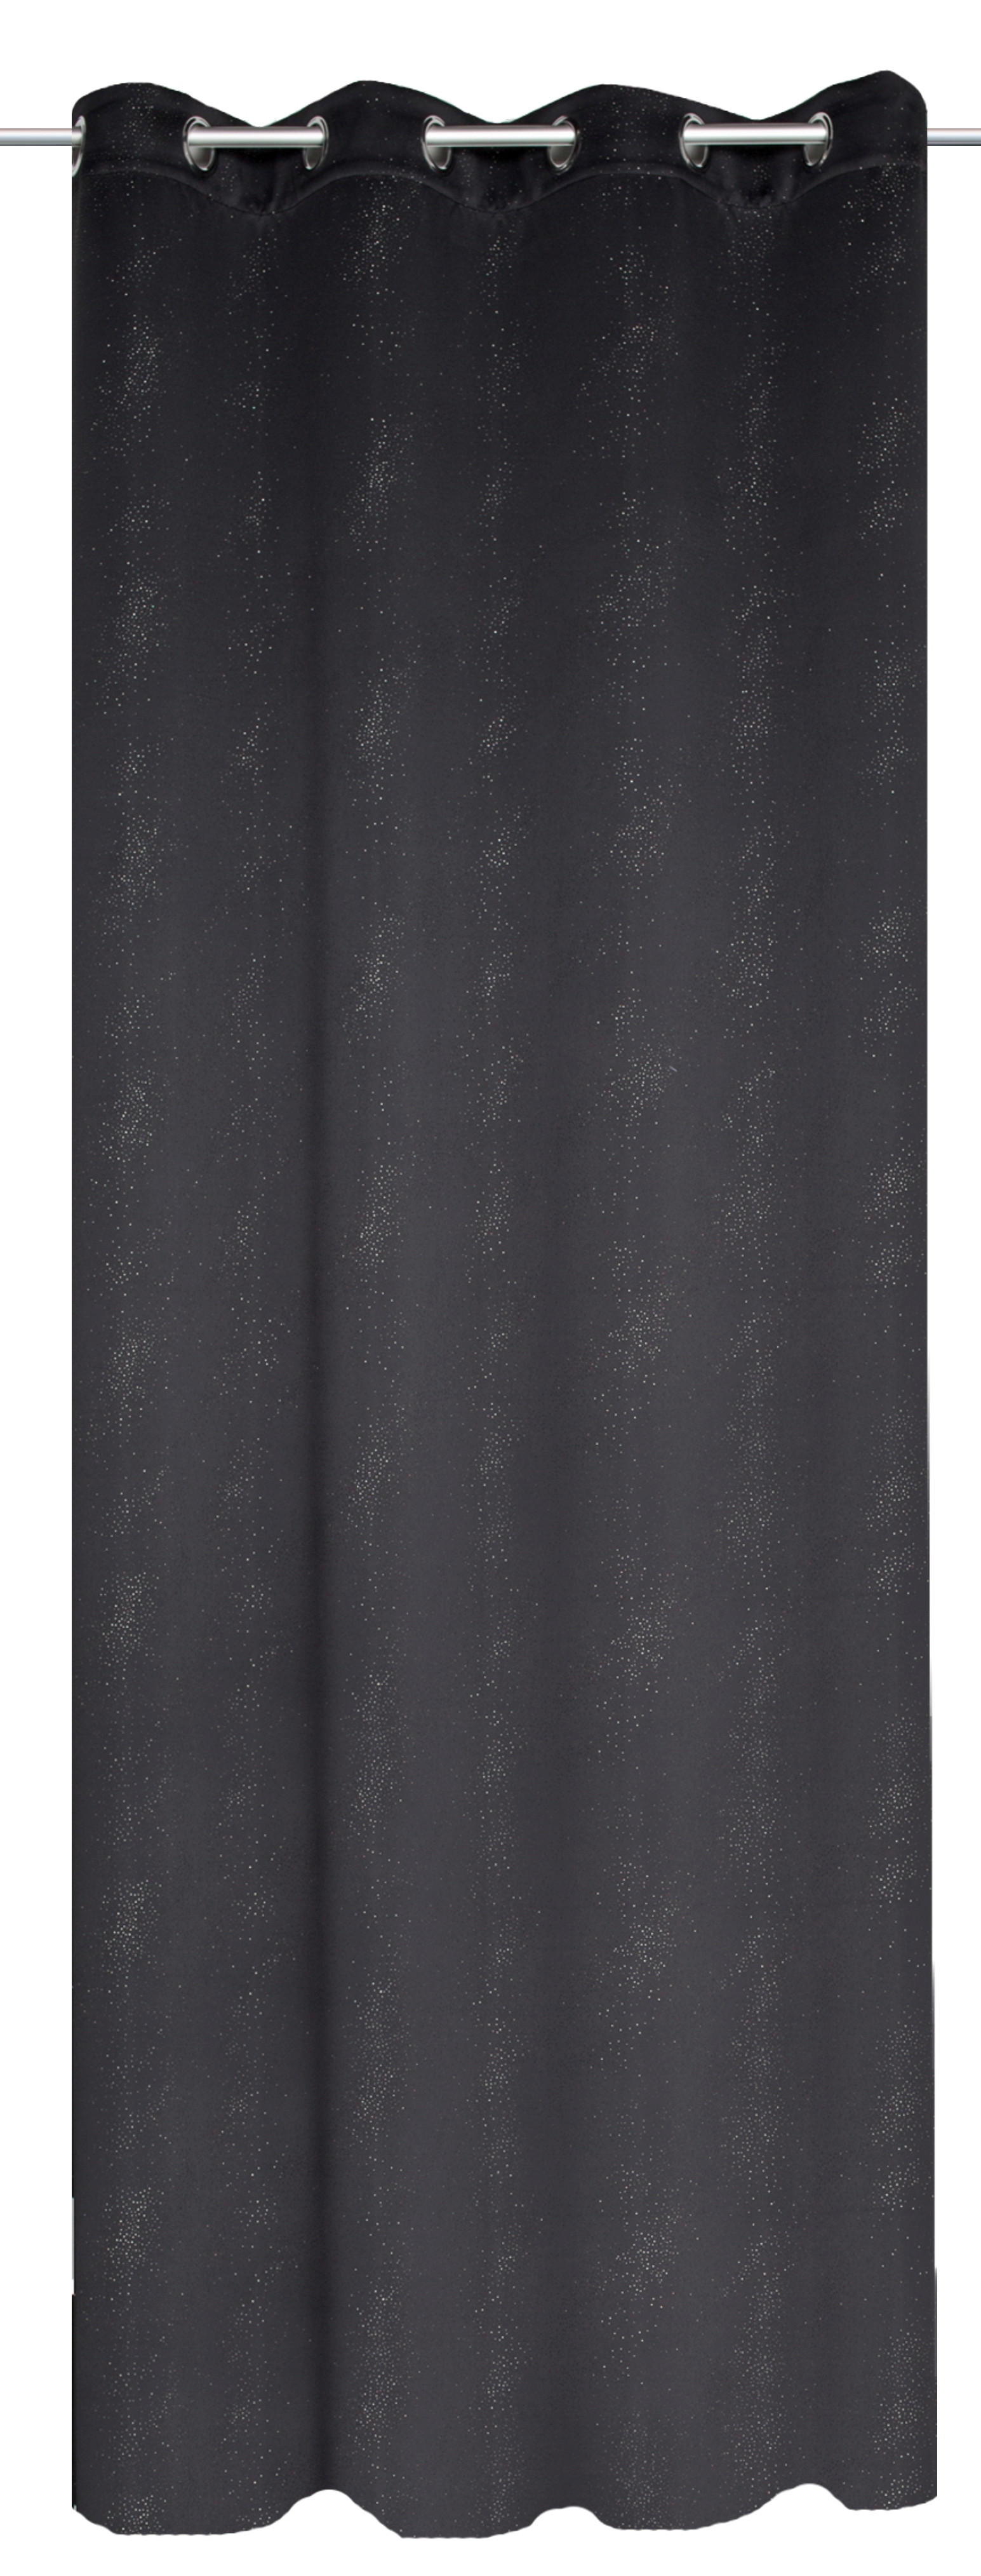 ÖSENSCHAL GALAXY black-out (lichtundurchlässig) 135/245 cm   - Schwarz, Basics, Textil (135/245cm)